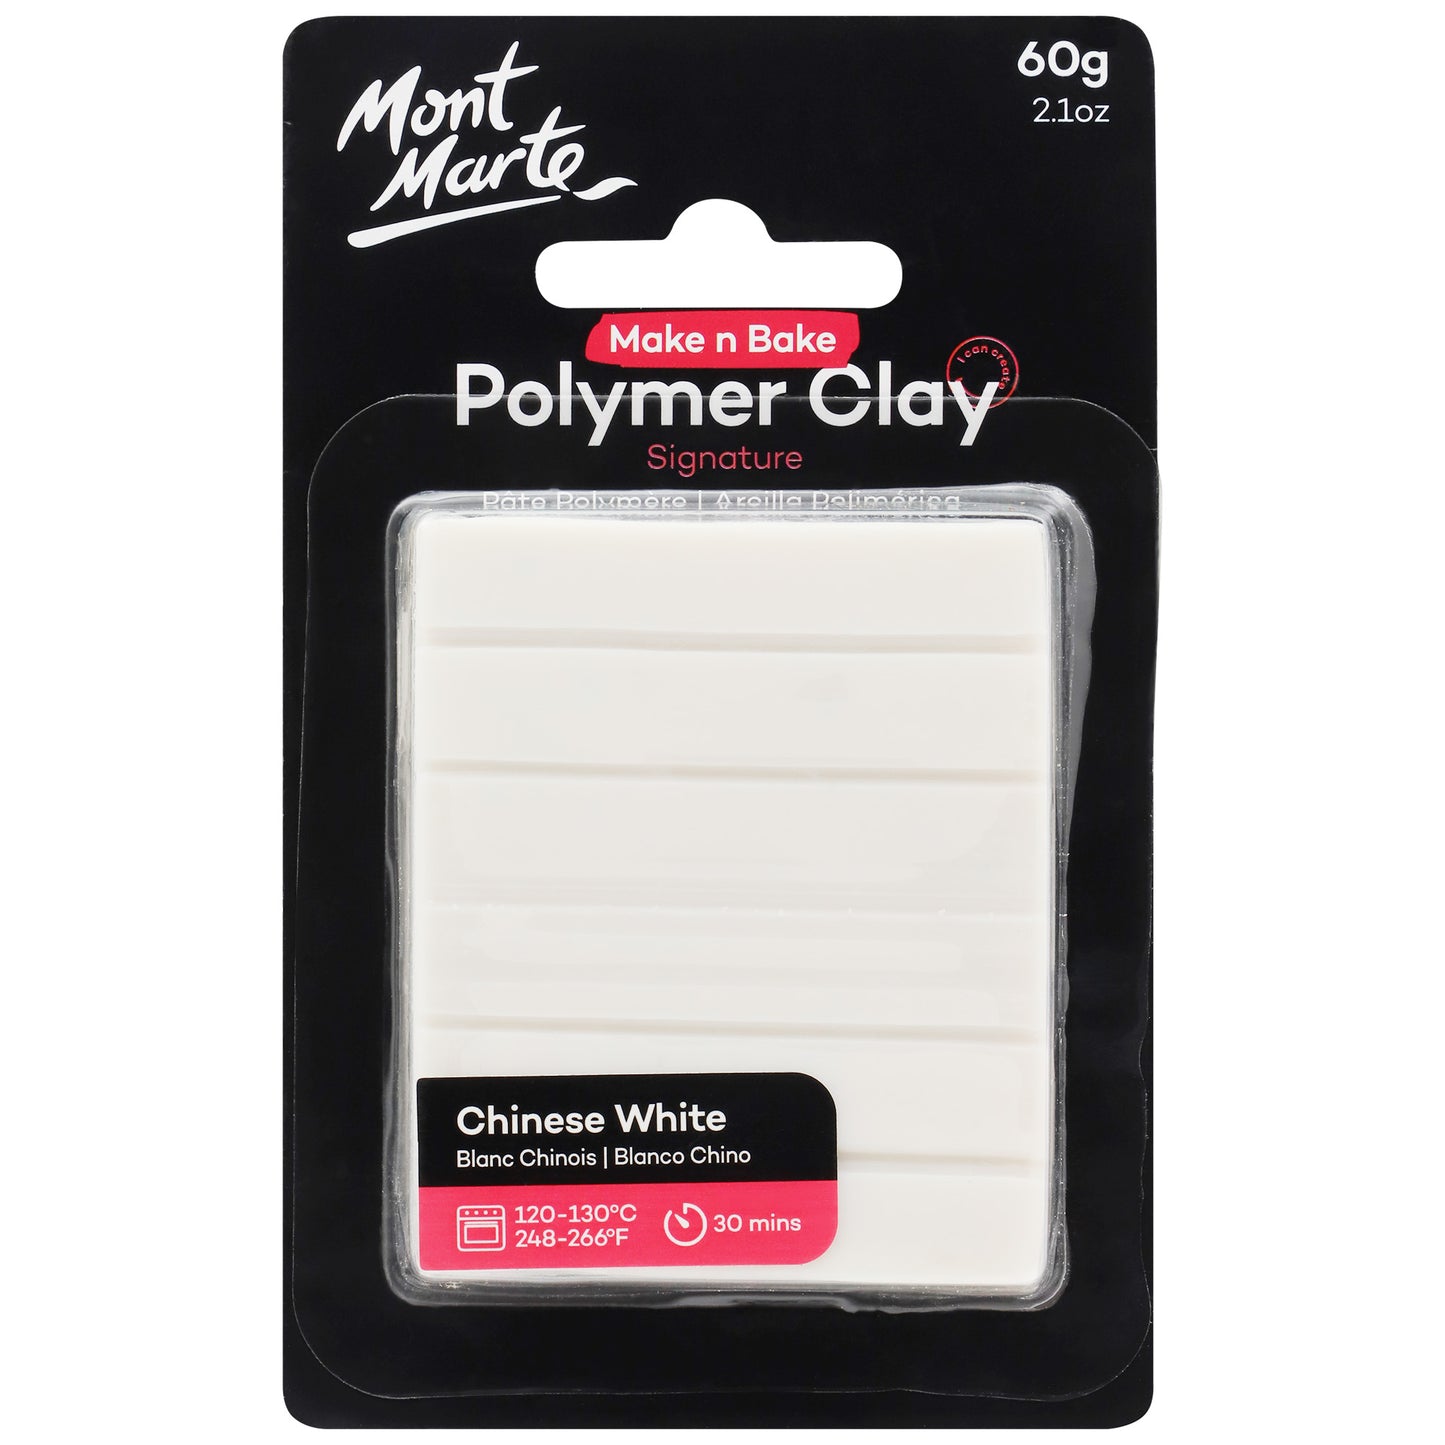 Polymer Clay 60g